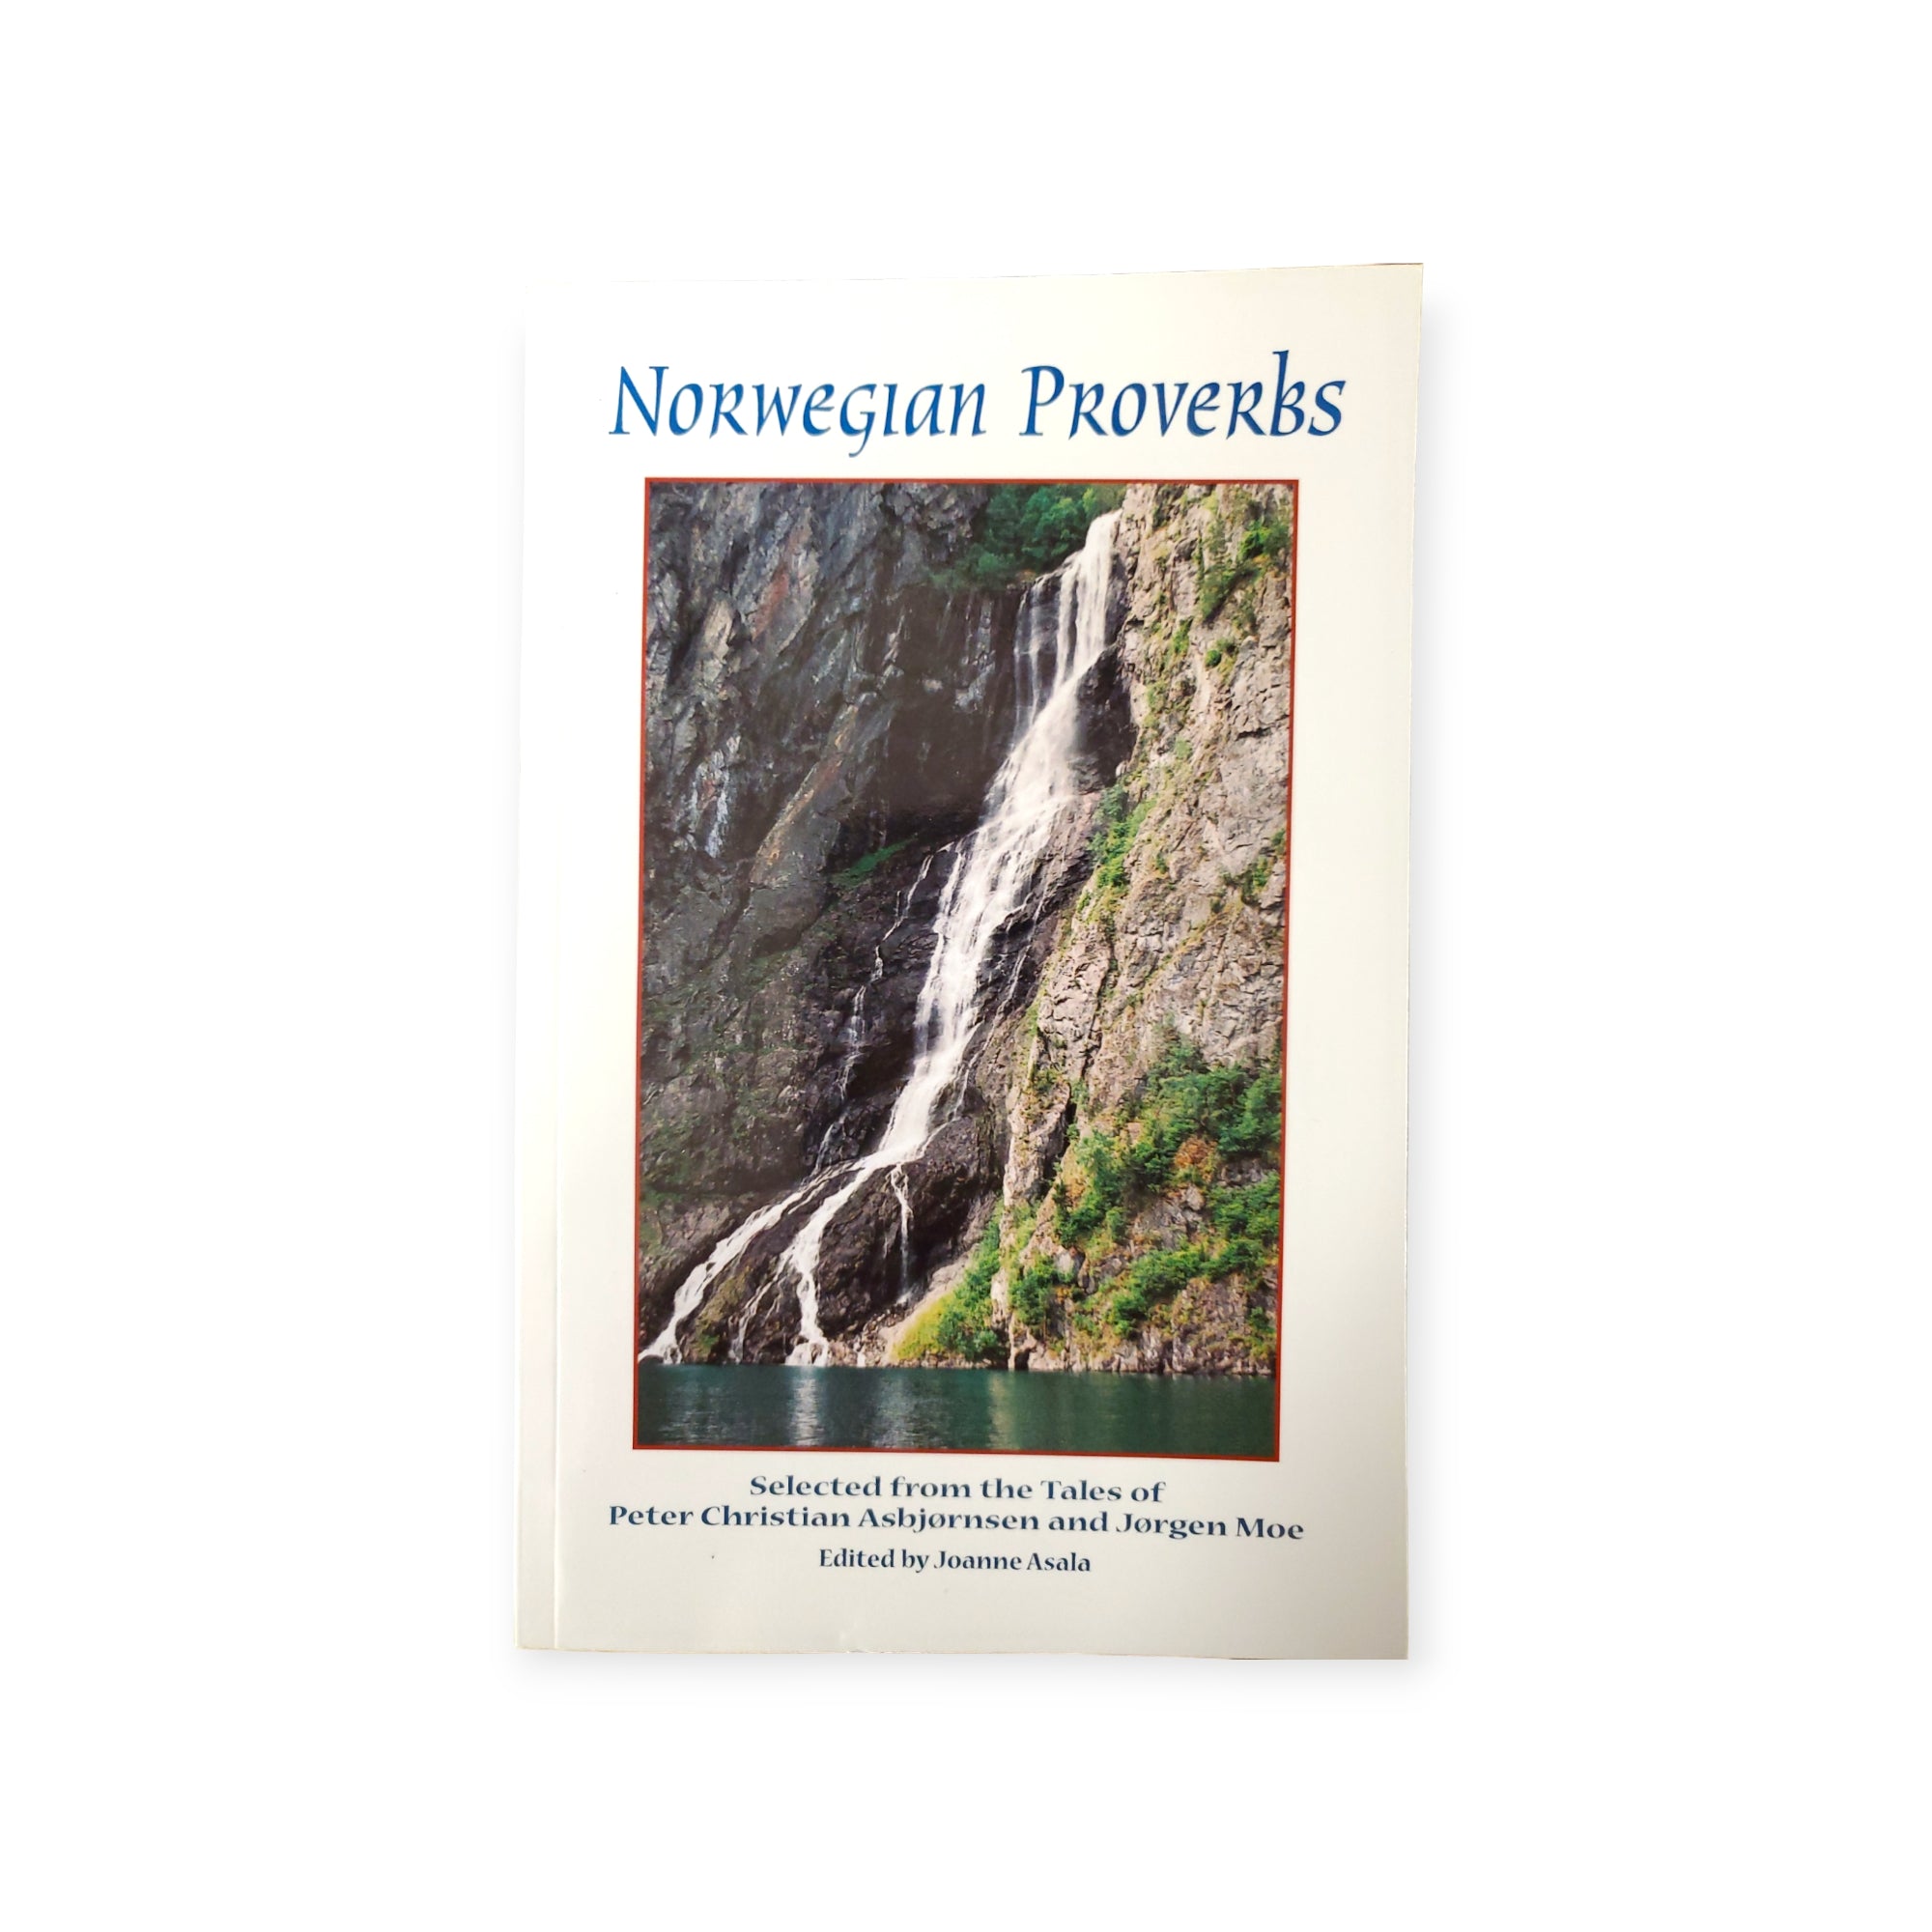 Book: Norwegian Proverbs